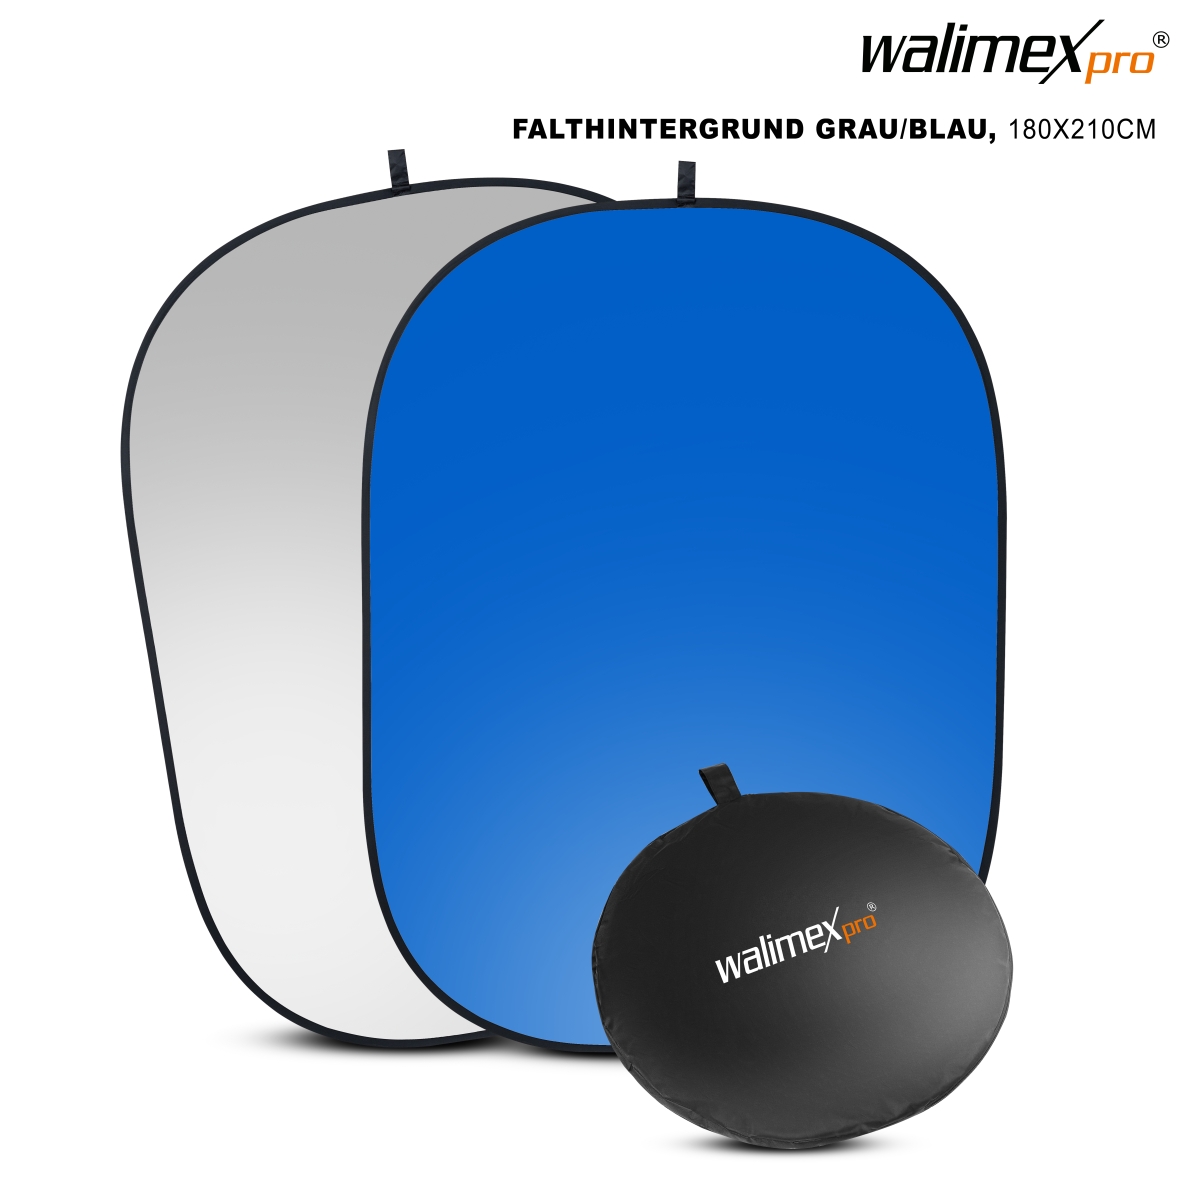 Walimex pro 2in1 Falthintergrund grau/blau, 180x210 cm